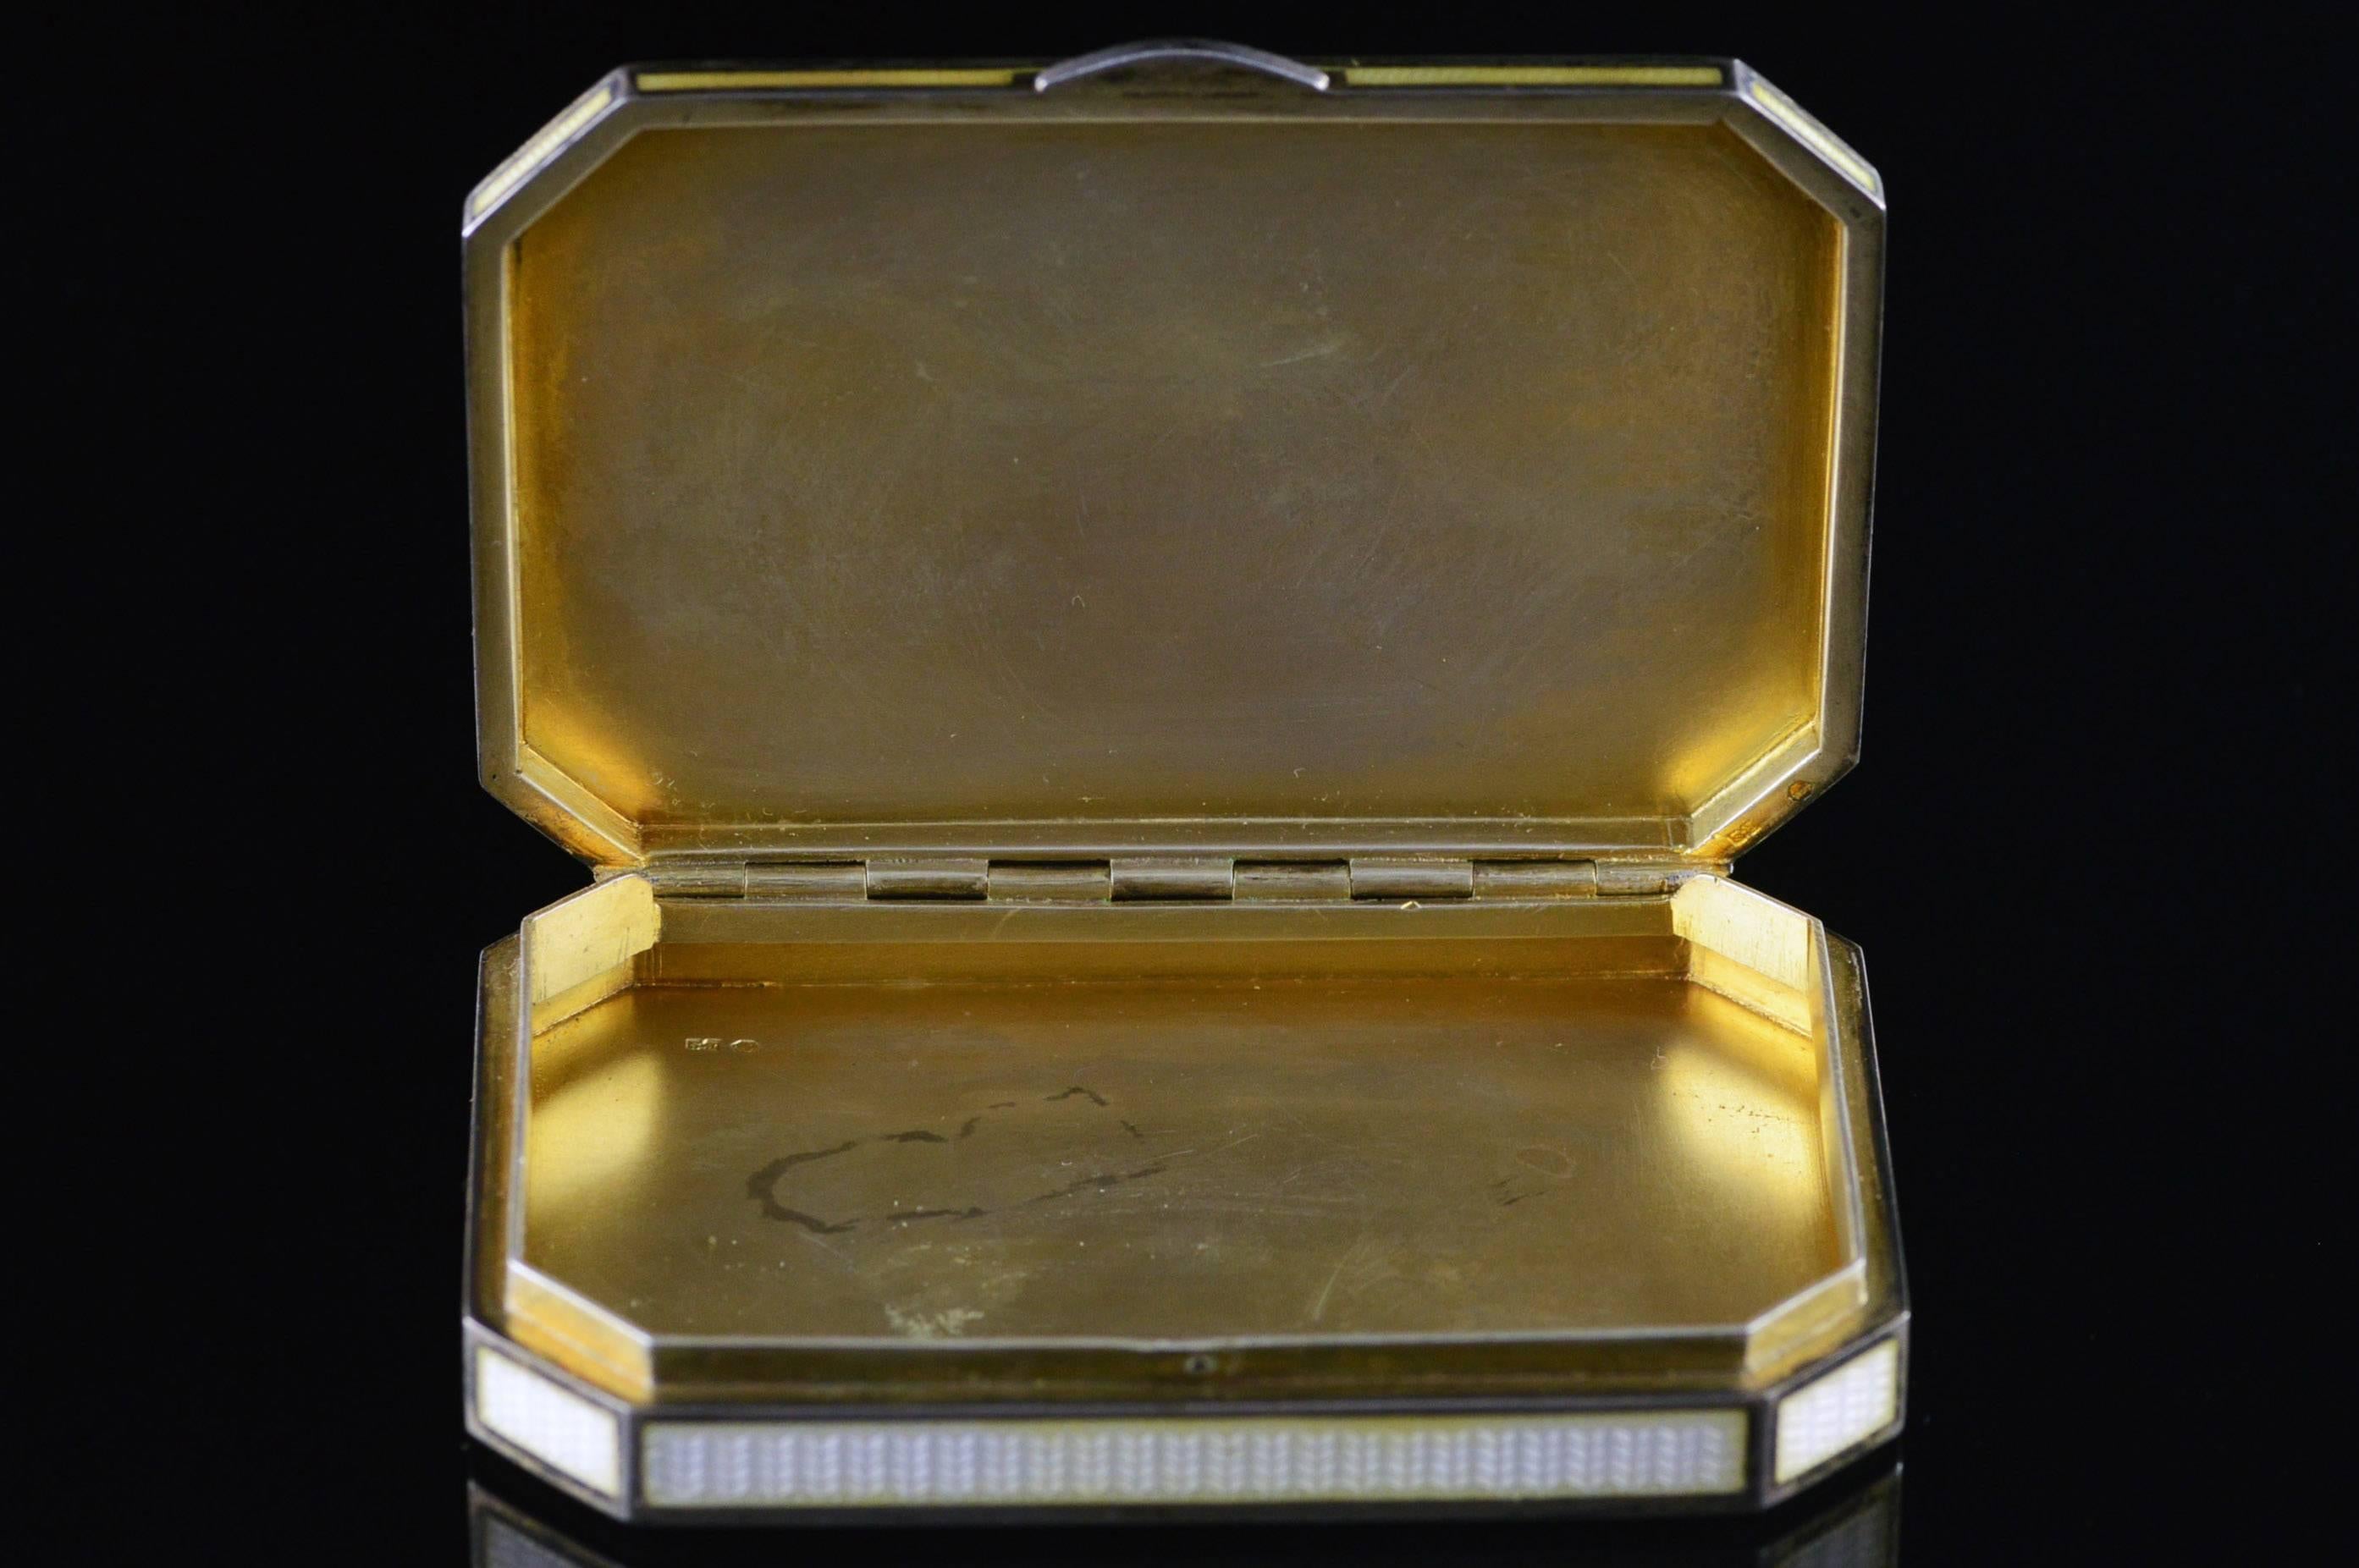 Edwardian Wavy Patterned Enamel Cigarette Sterling Silver Case 1